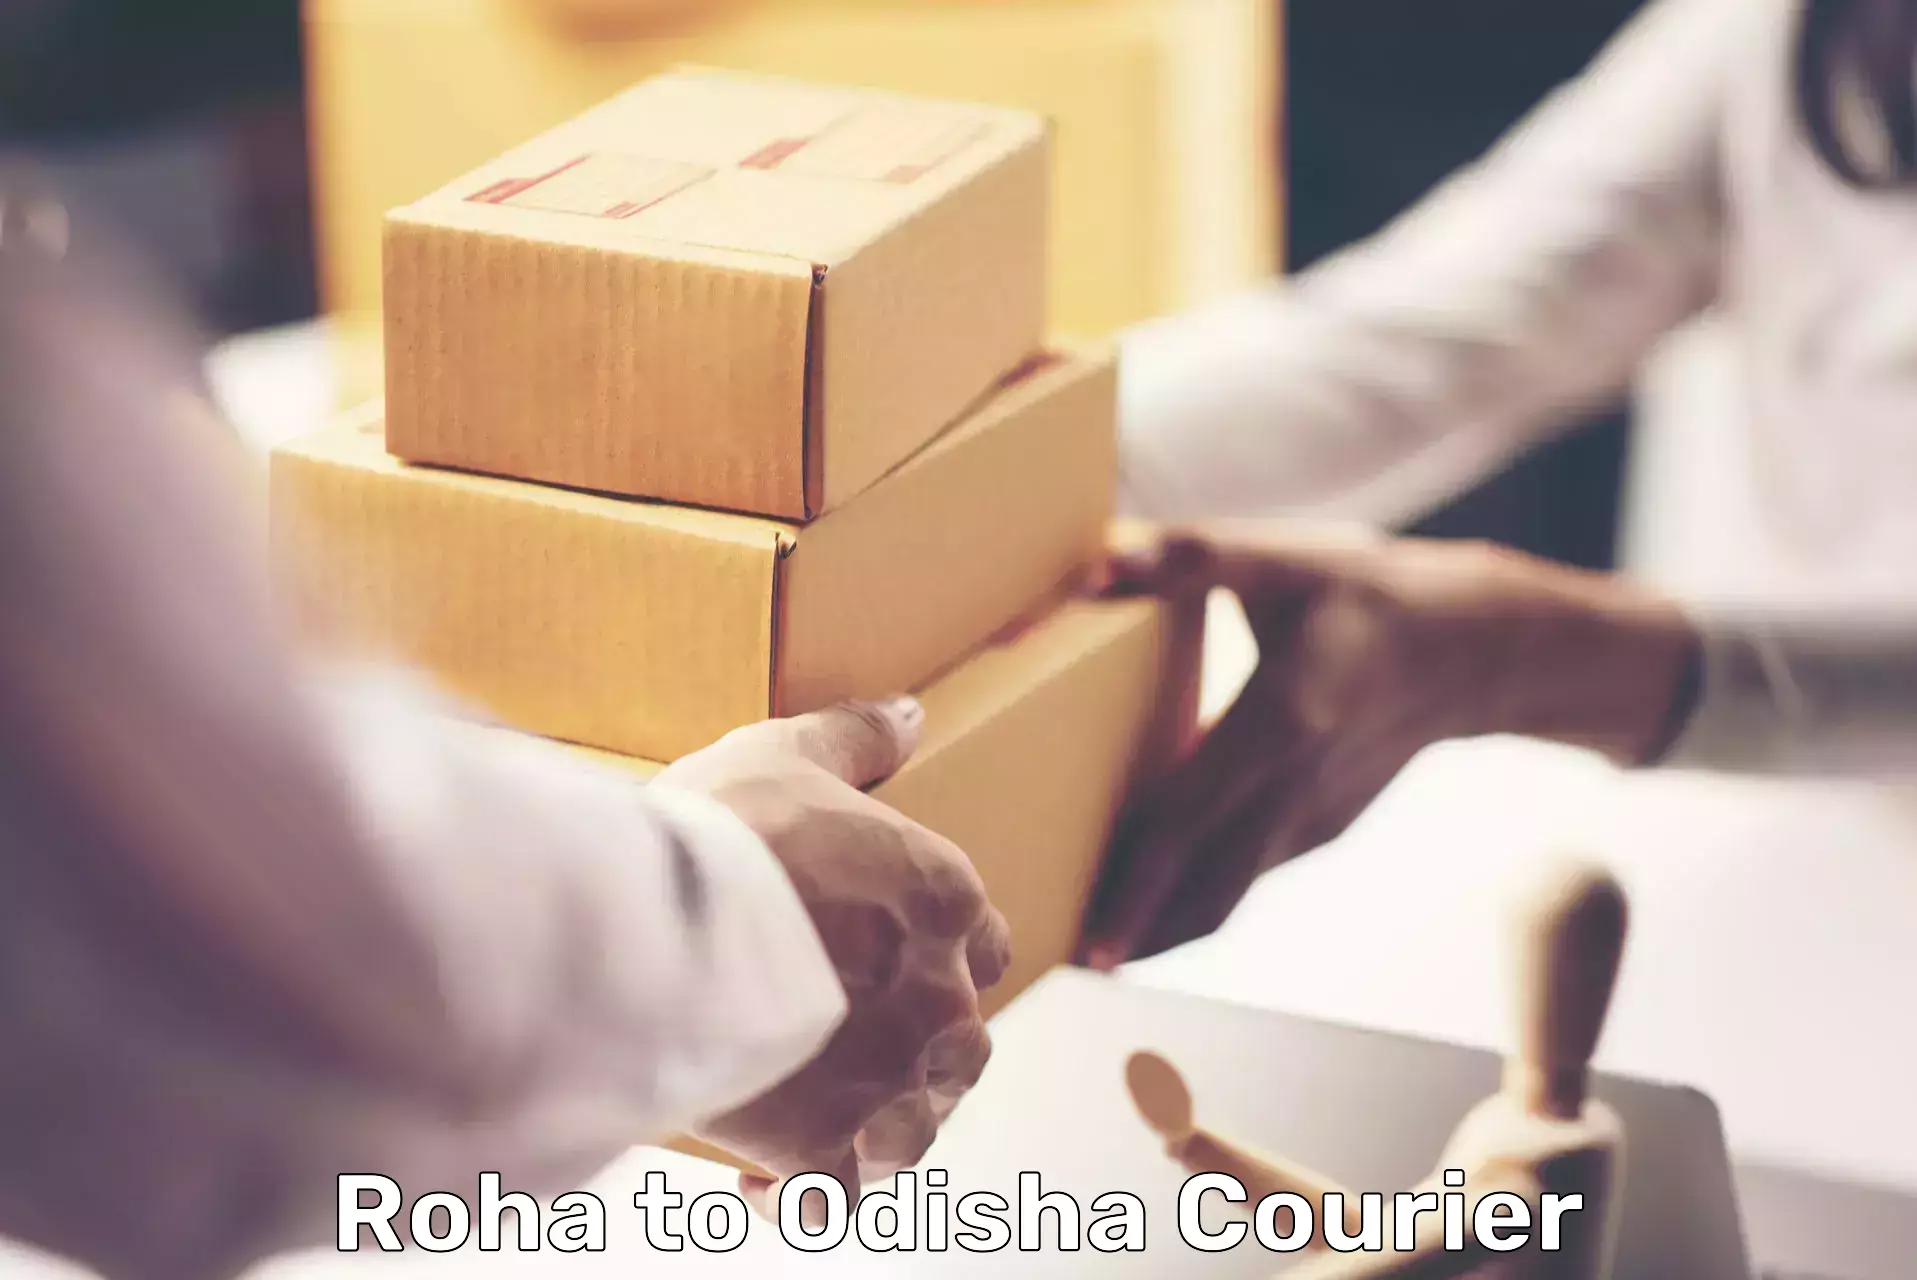 Advanced shipping technology Roha to Dukura